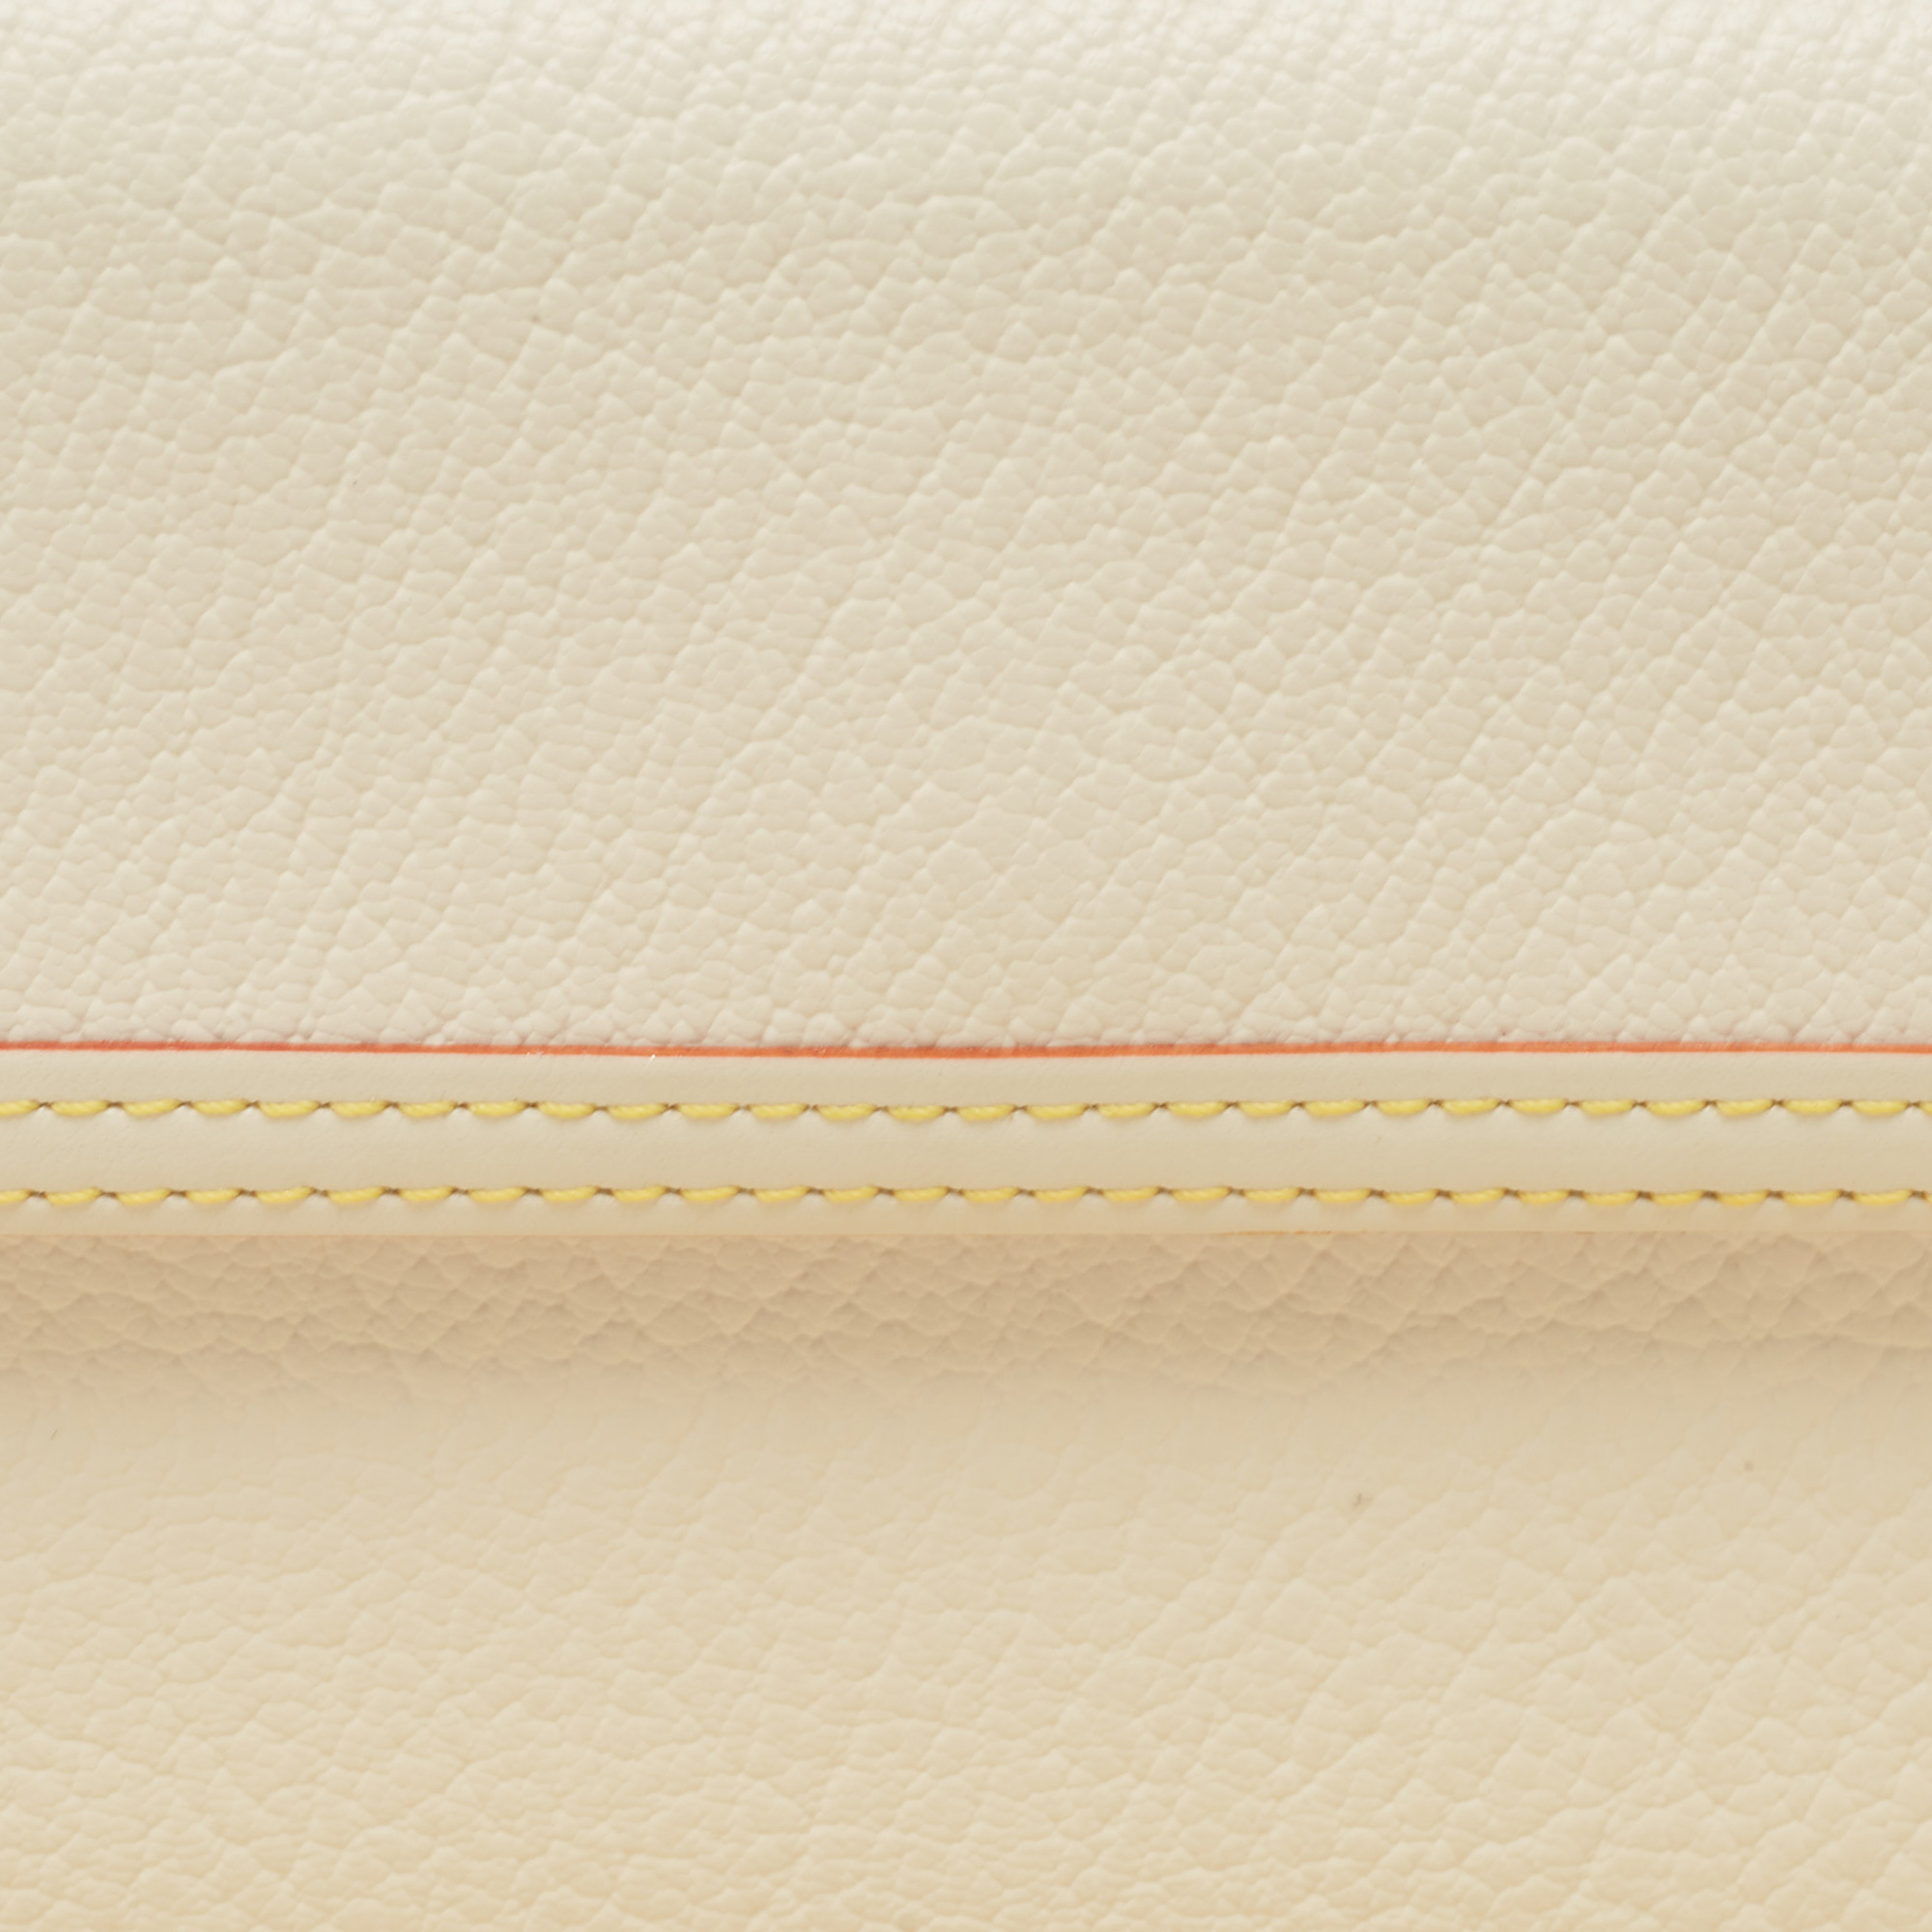 Louis Vuitton White Leather Porte Tresor International Trifold Wallet